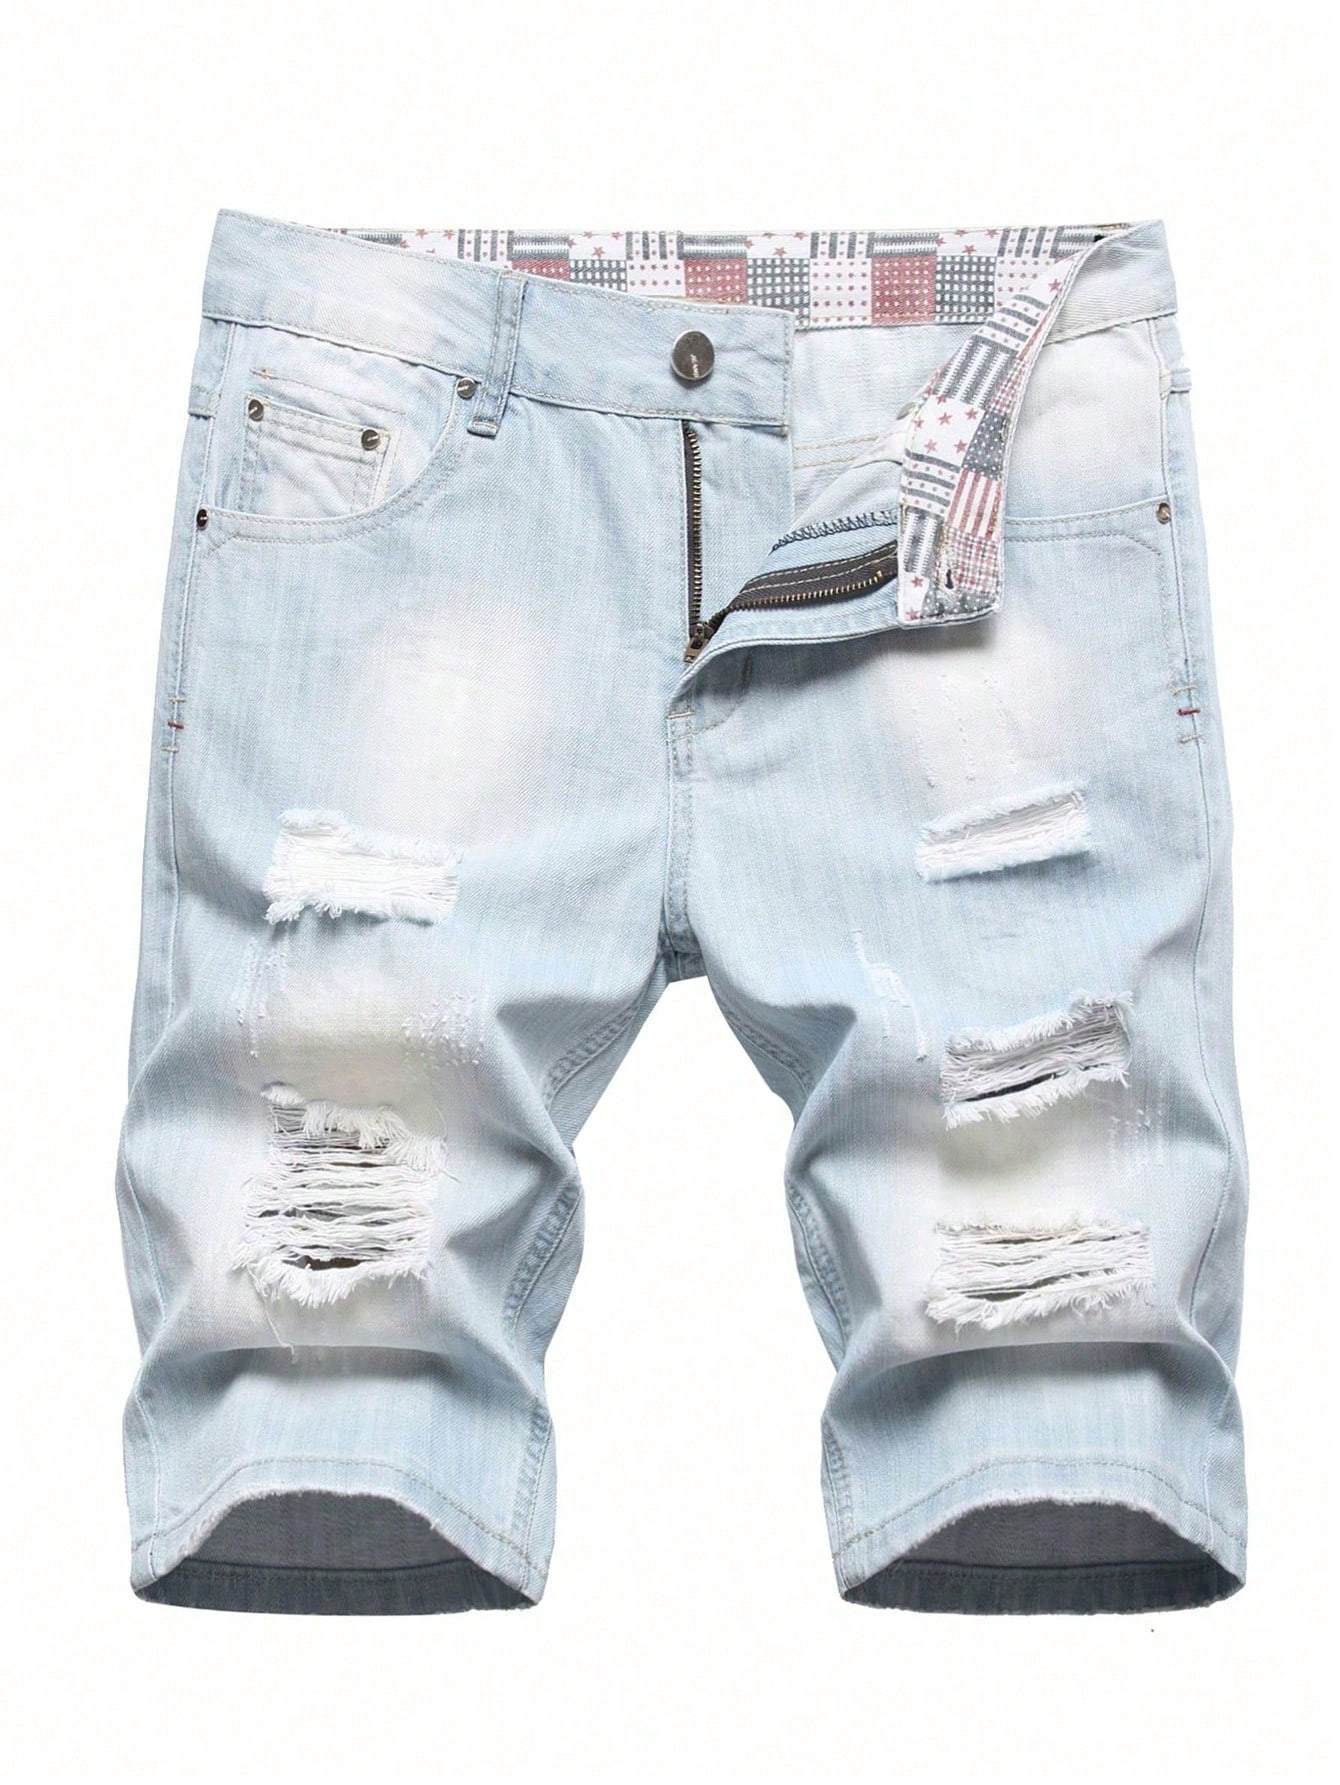 Мужские джинсовые шорты с потертостями, потертые, легкая стирка